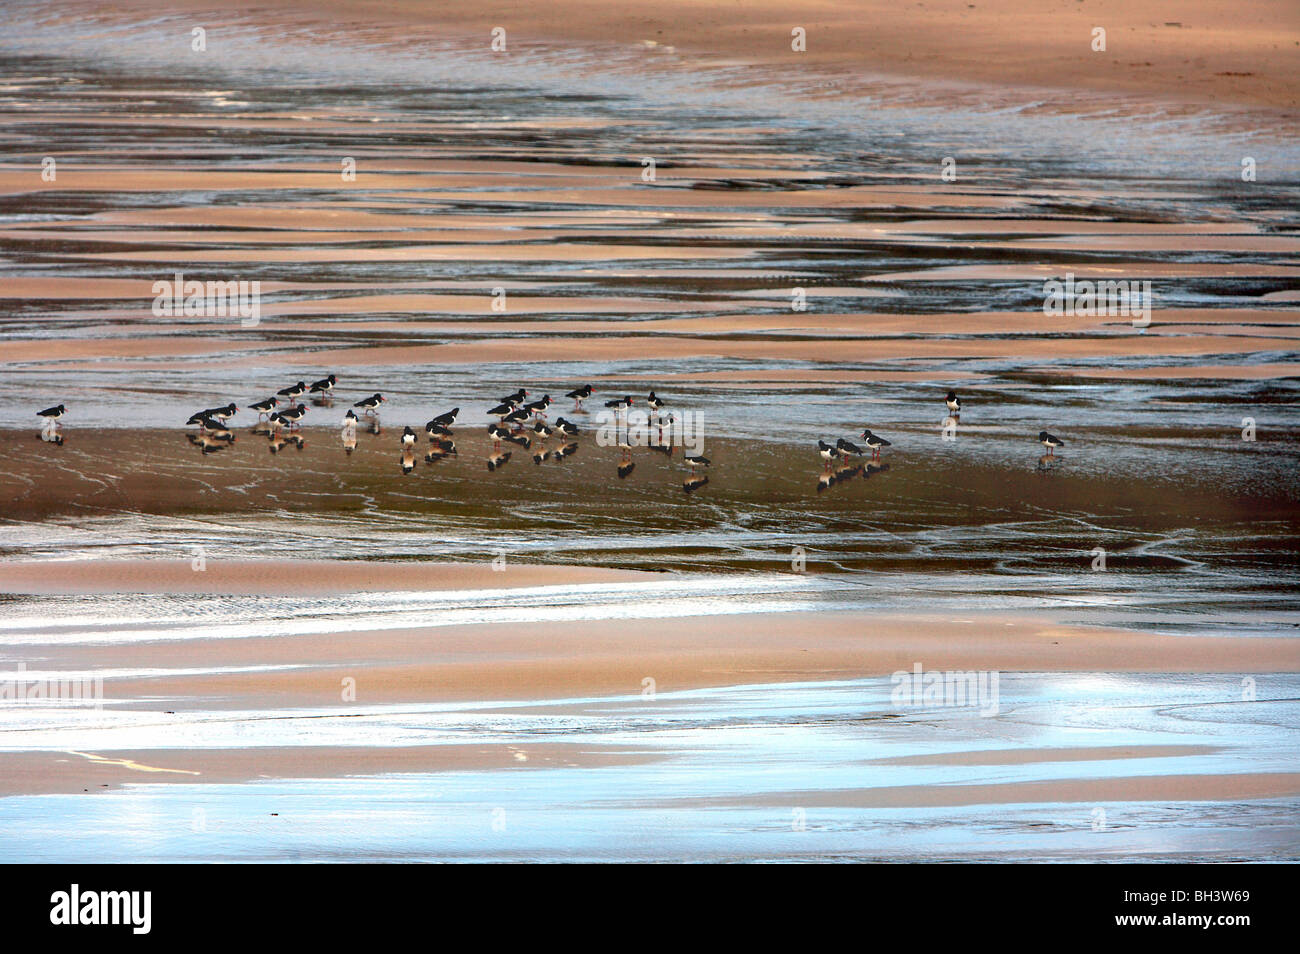 Oystercatchers (Haematopus ostralegus) on beach of Sandwood bay. Stock Photo